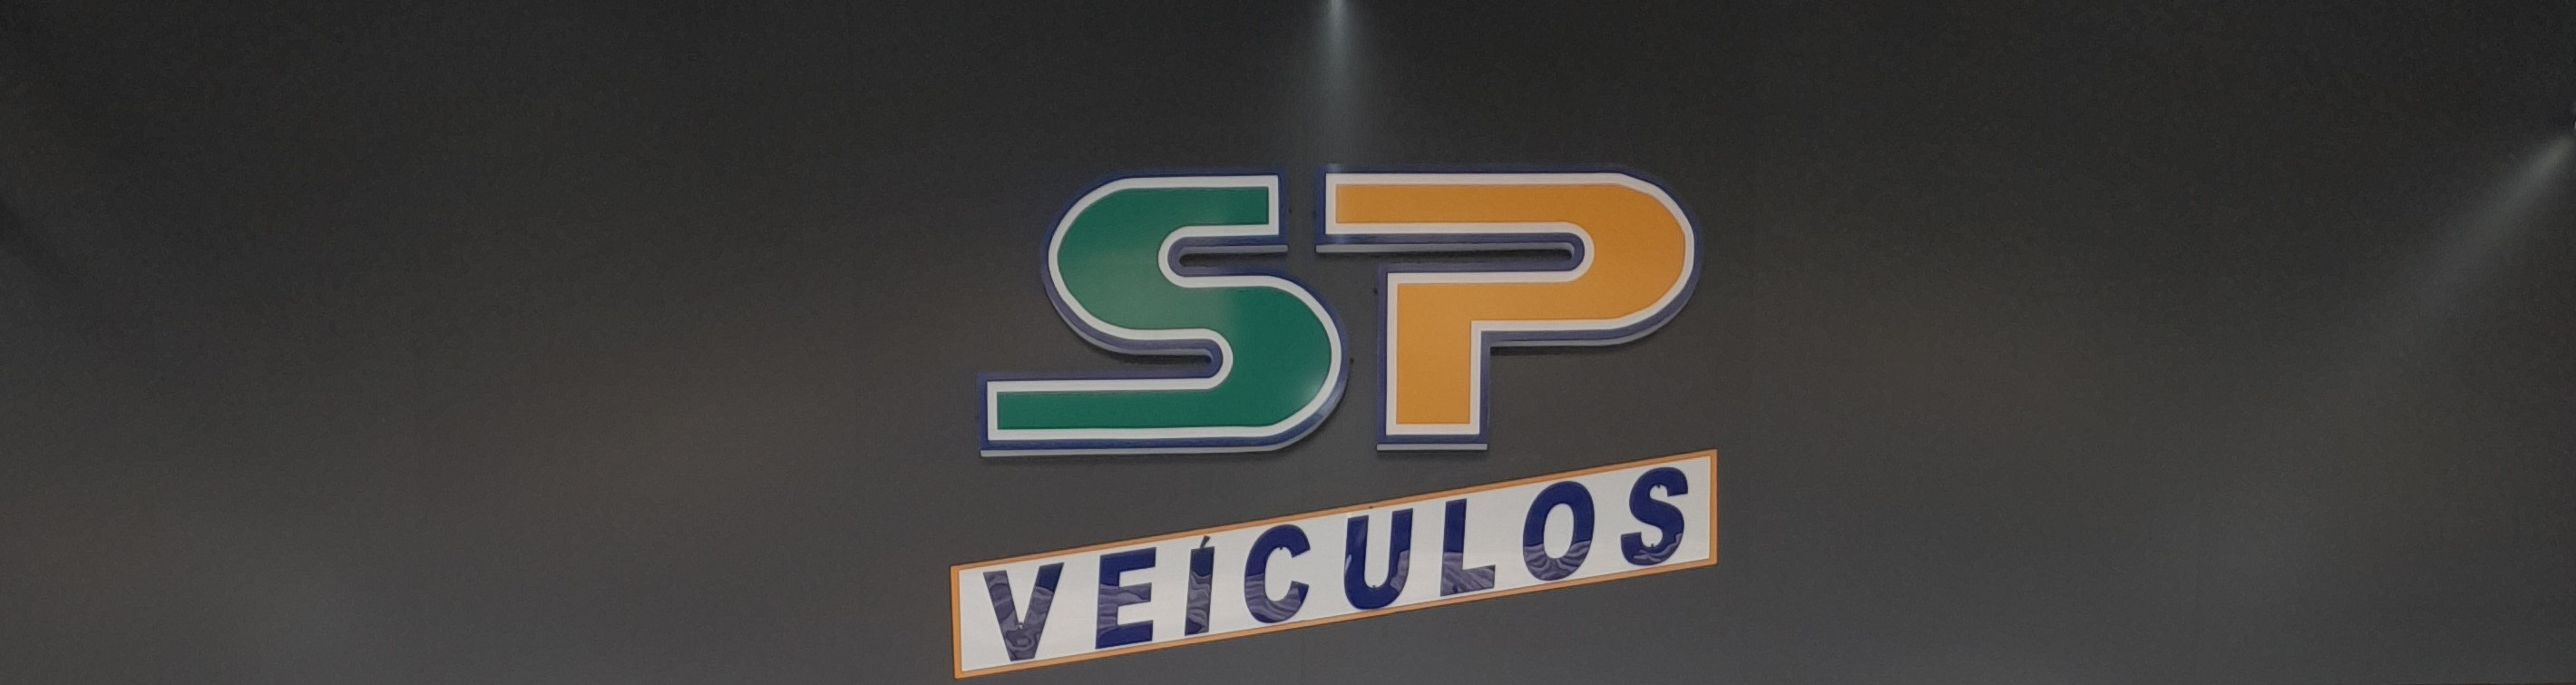 Fachada da loja Santa Paula Veículos  - São Paulo - SP